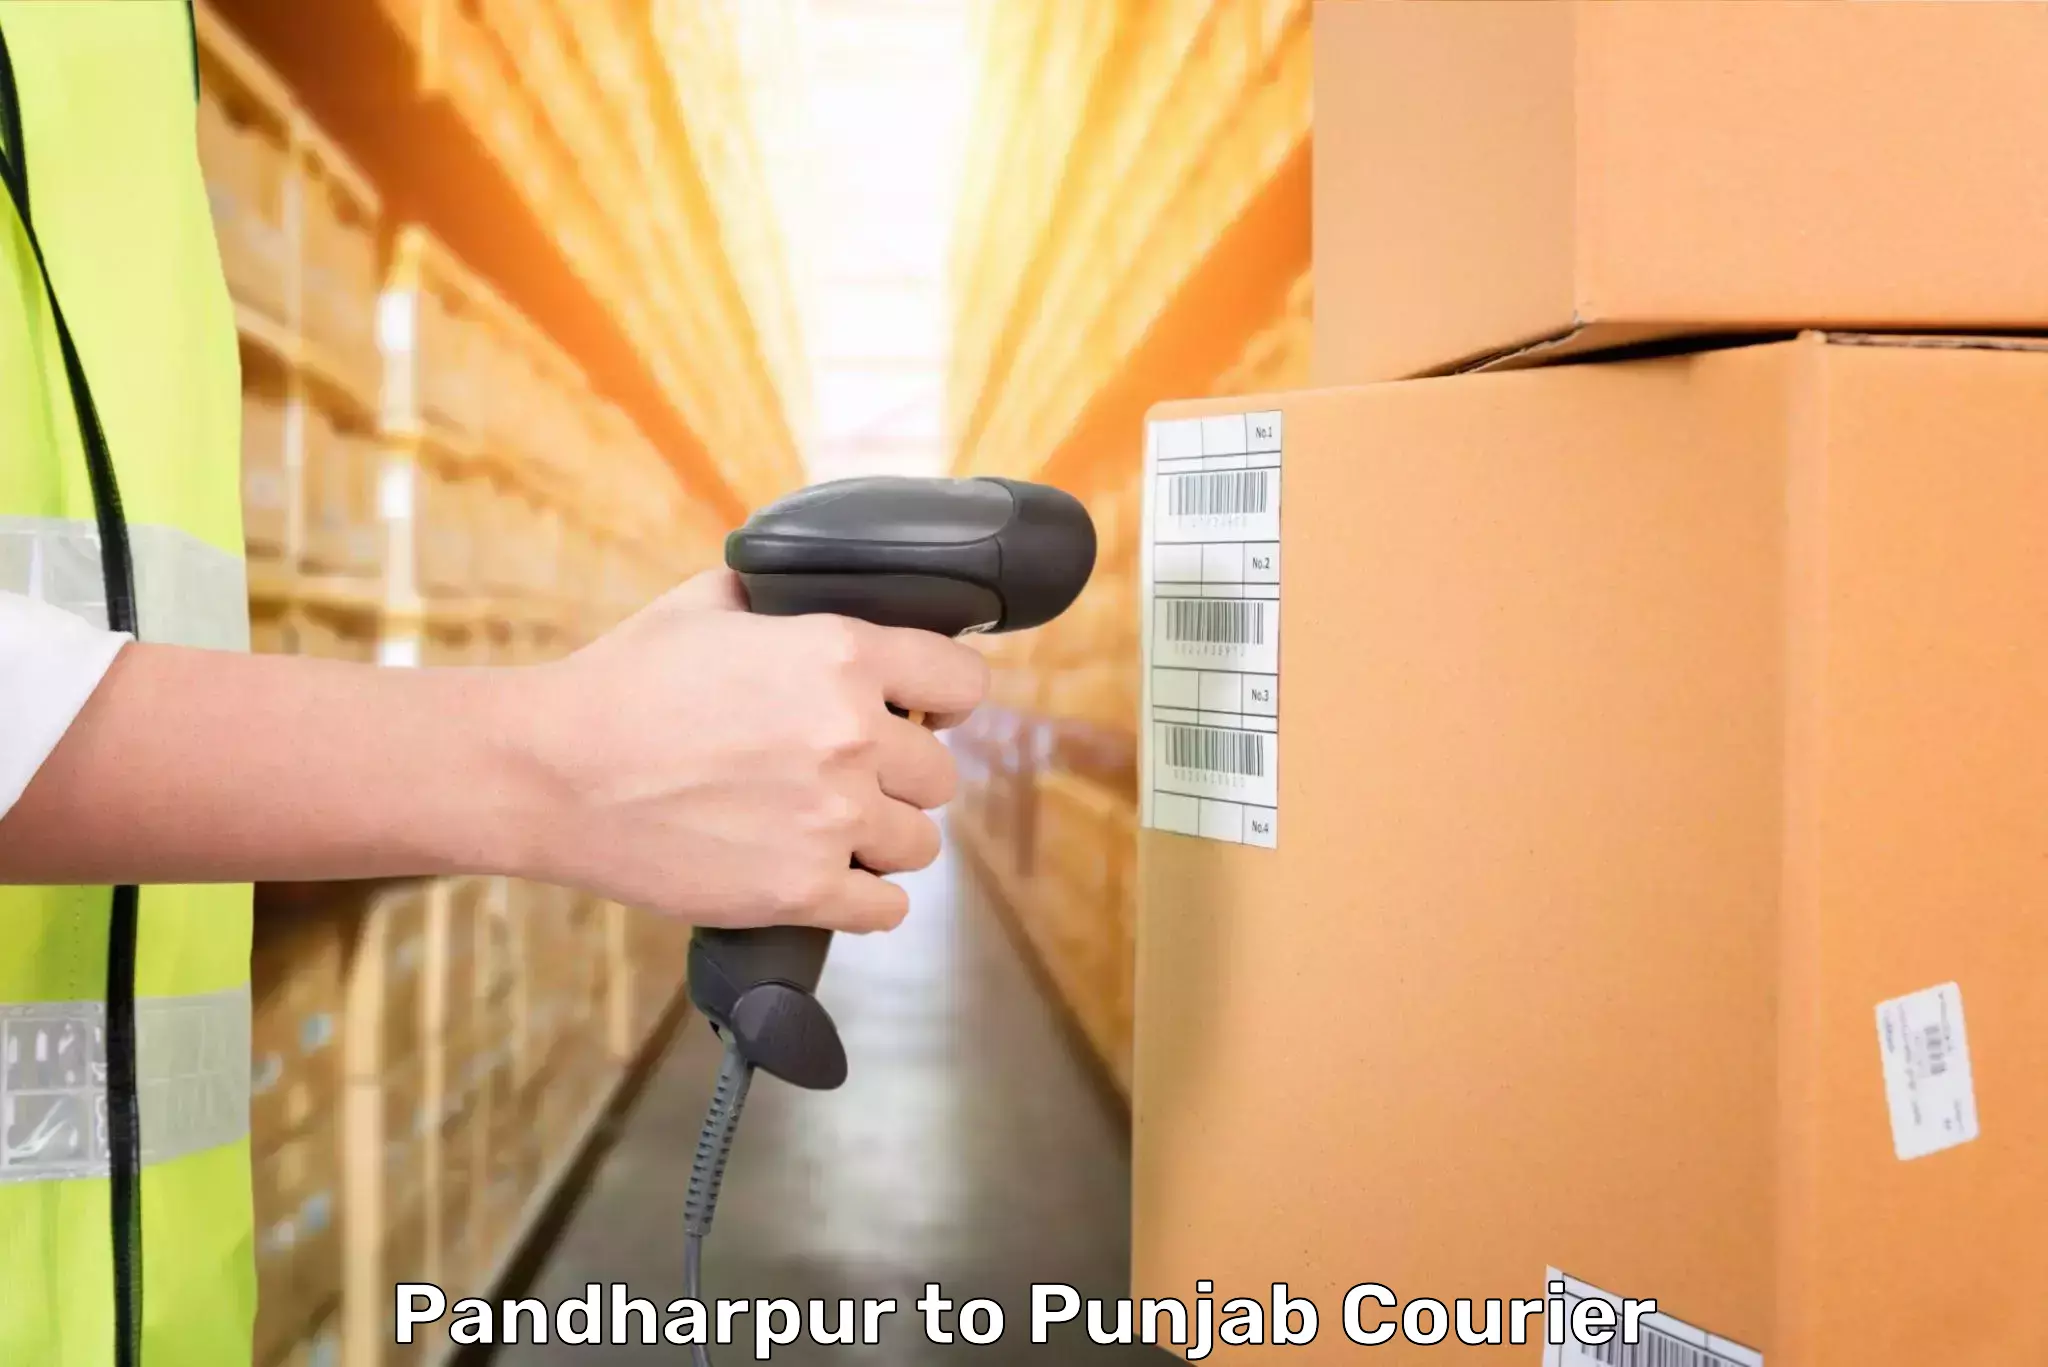 Luggage transfer service Pandharpur to Patran